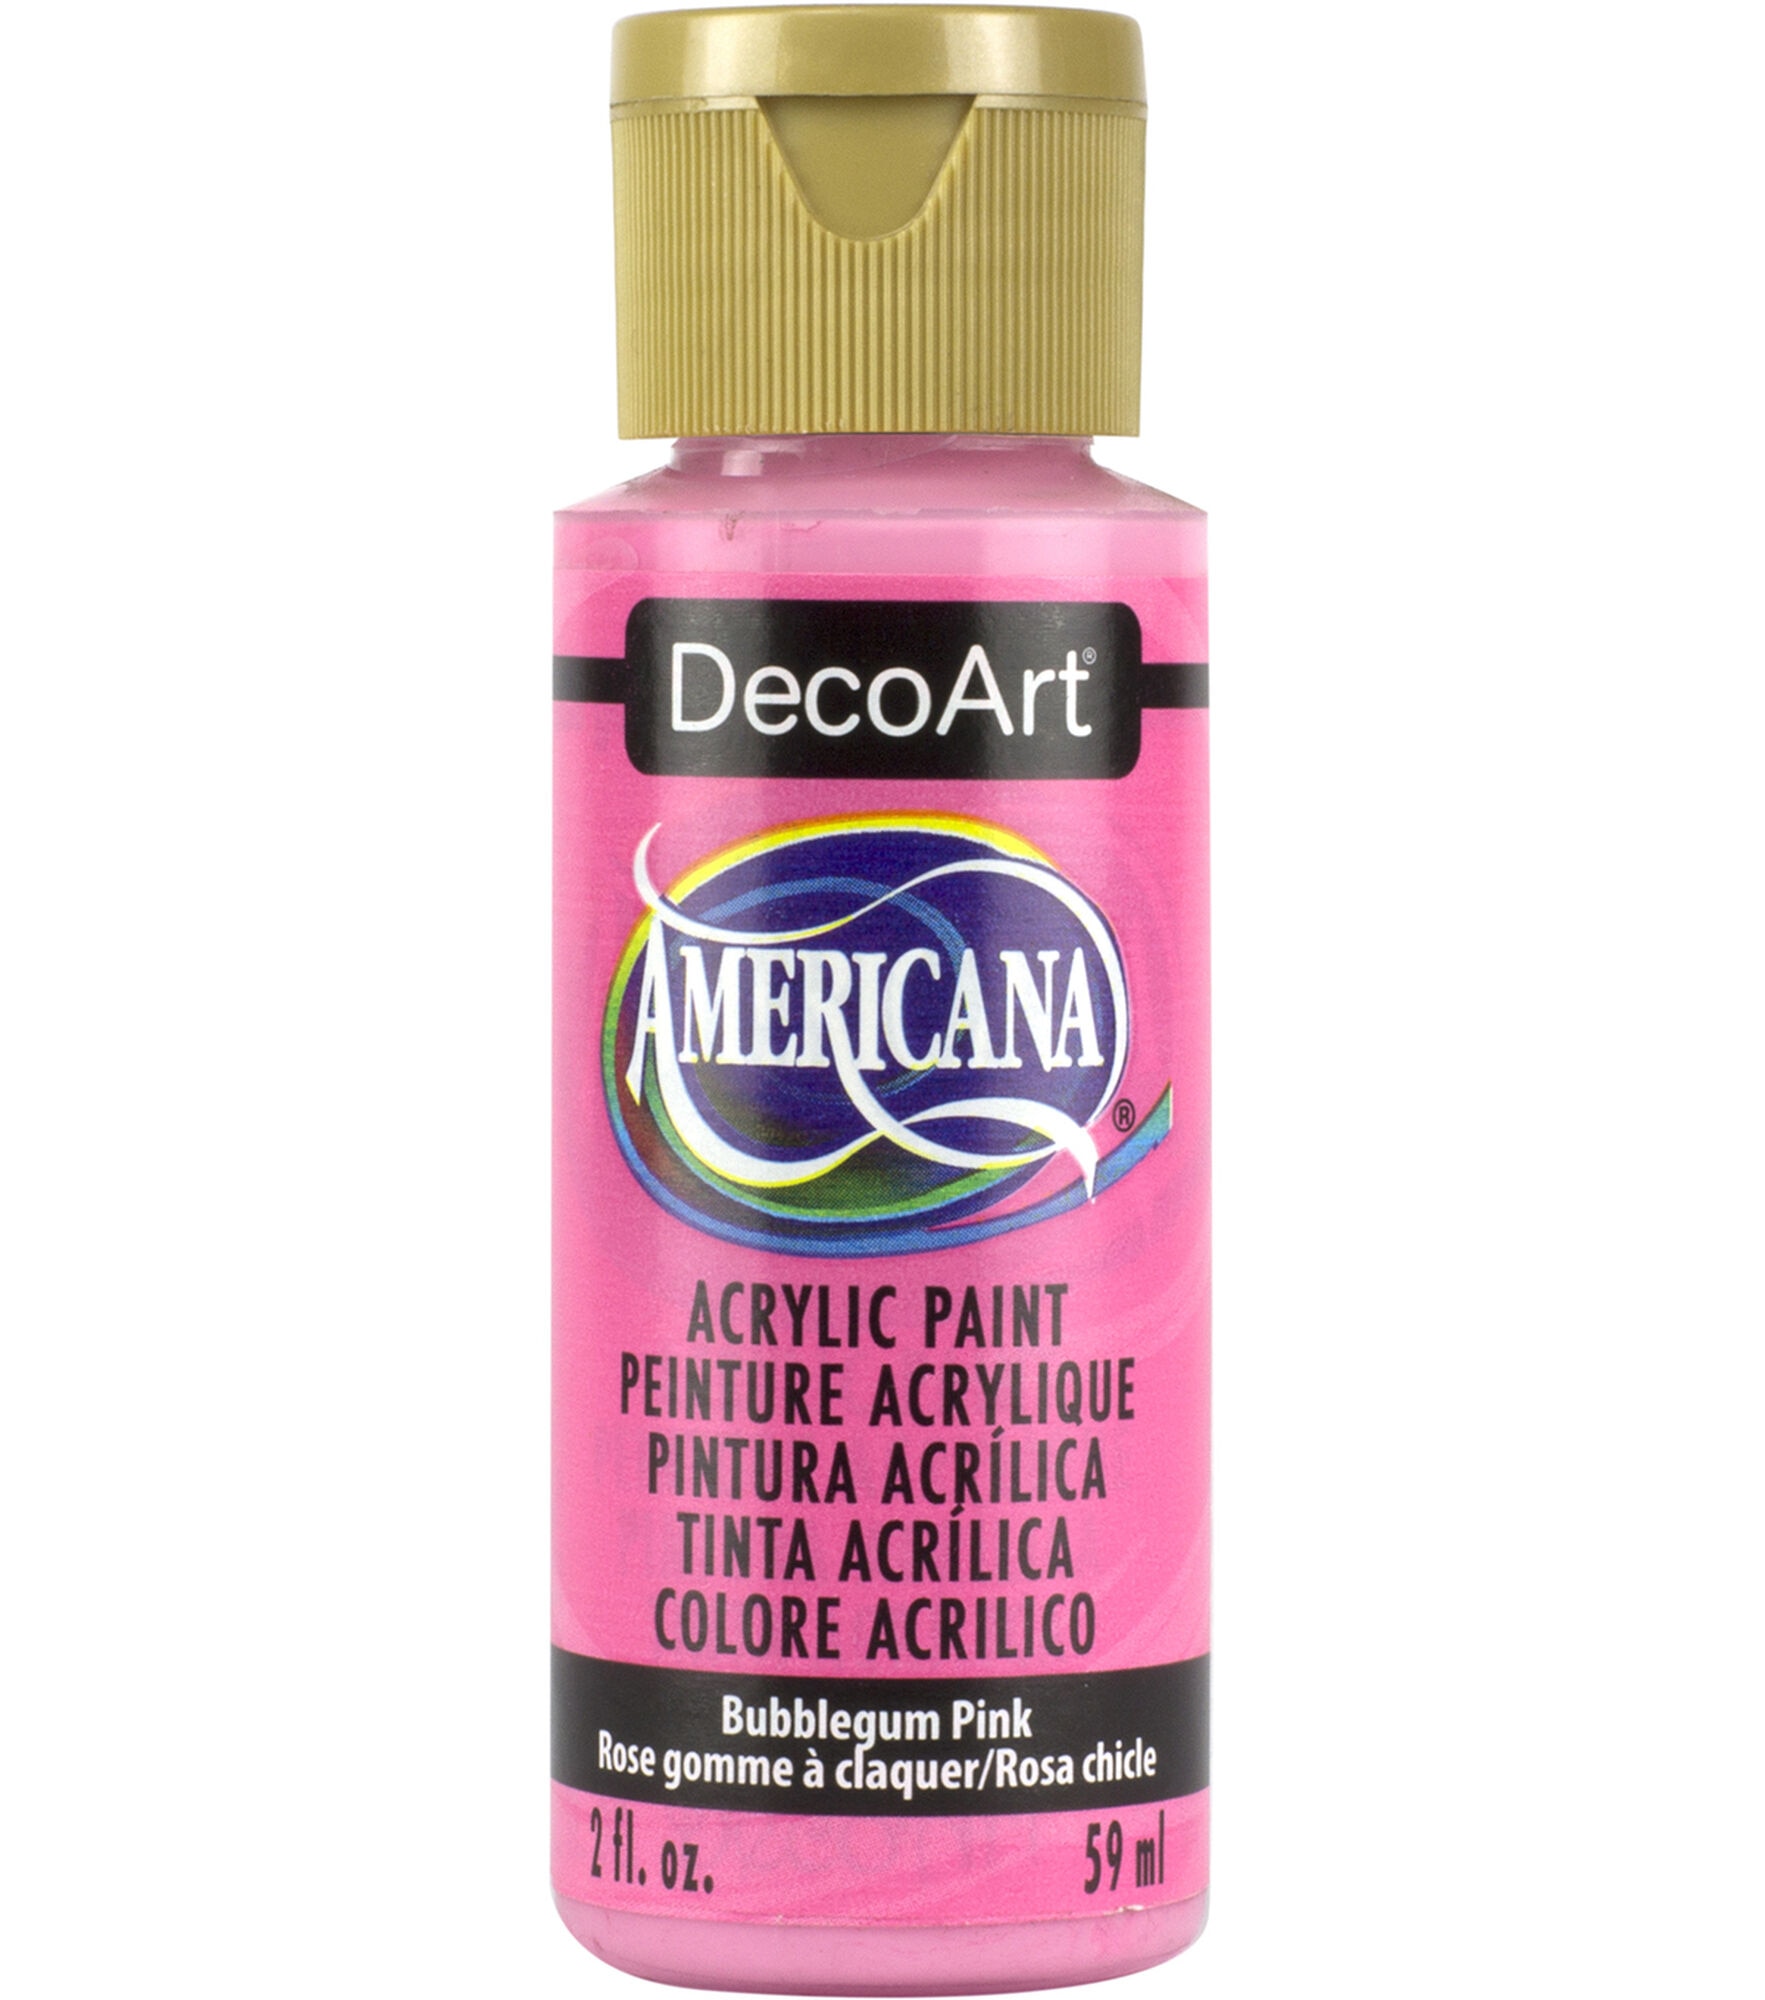 DecoArt Americana Acrylic 2oz Paint, Bubblegum Pink, hi-res